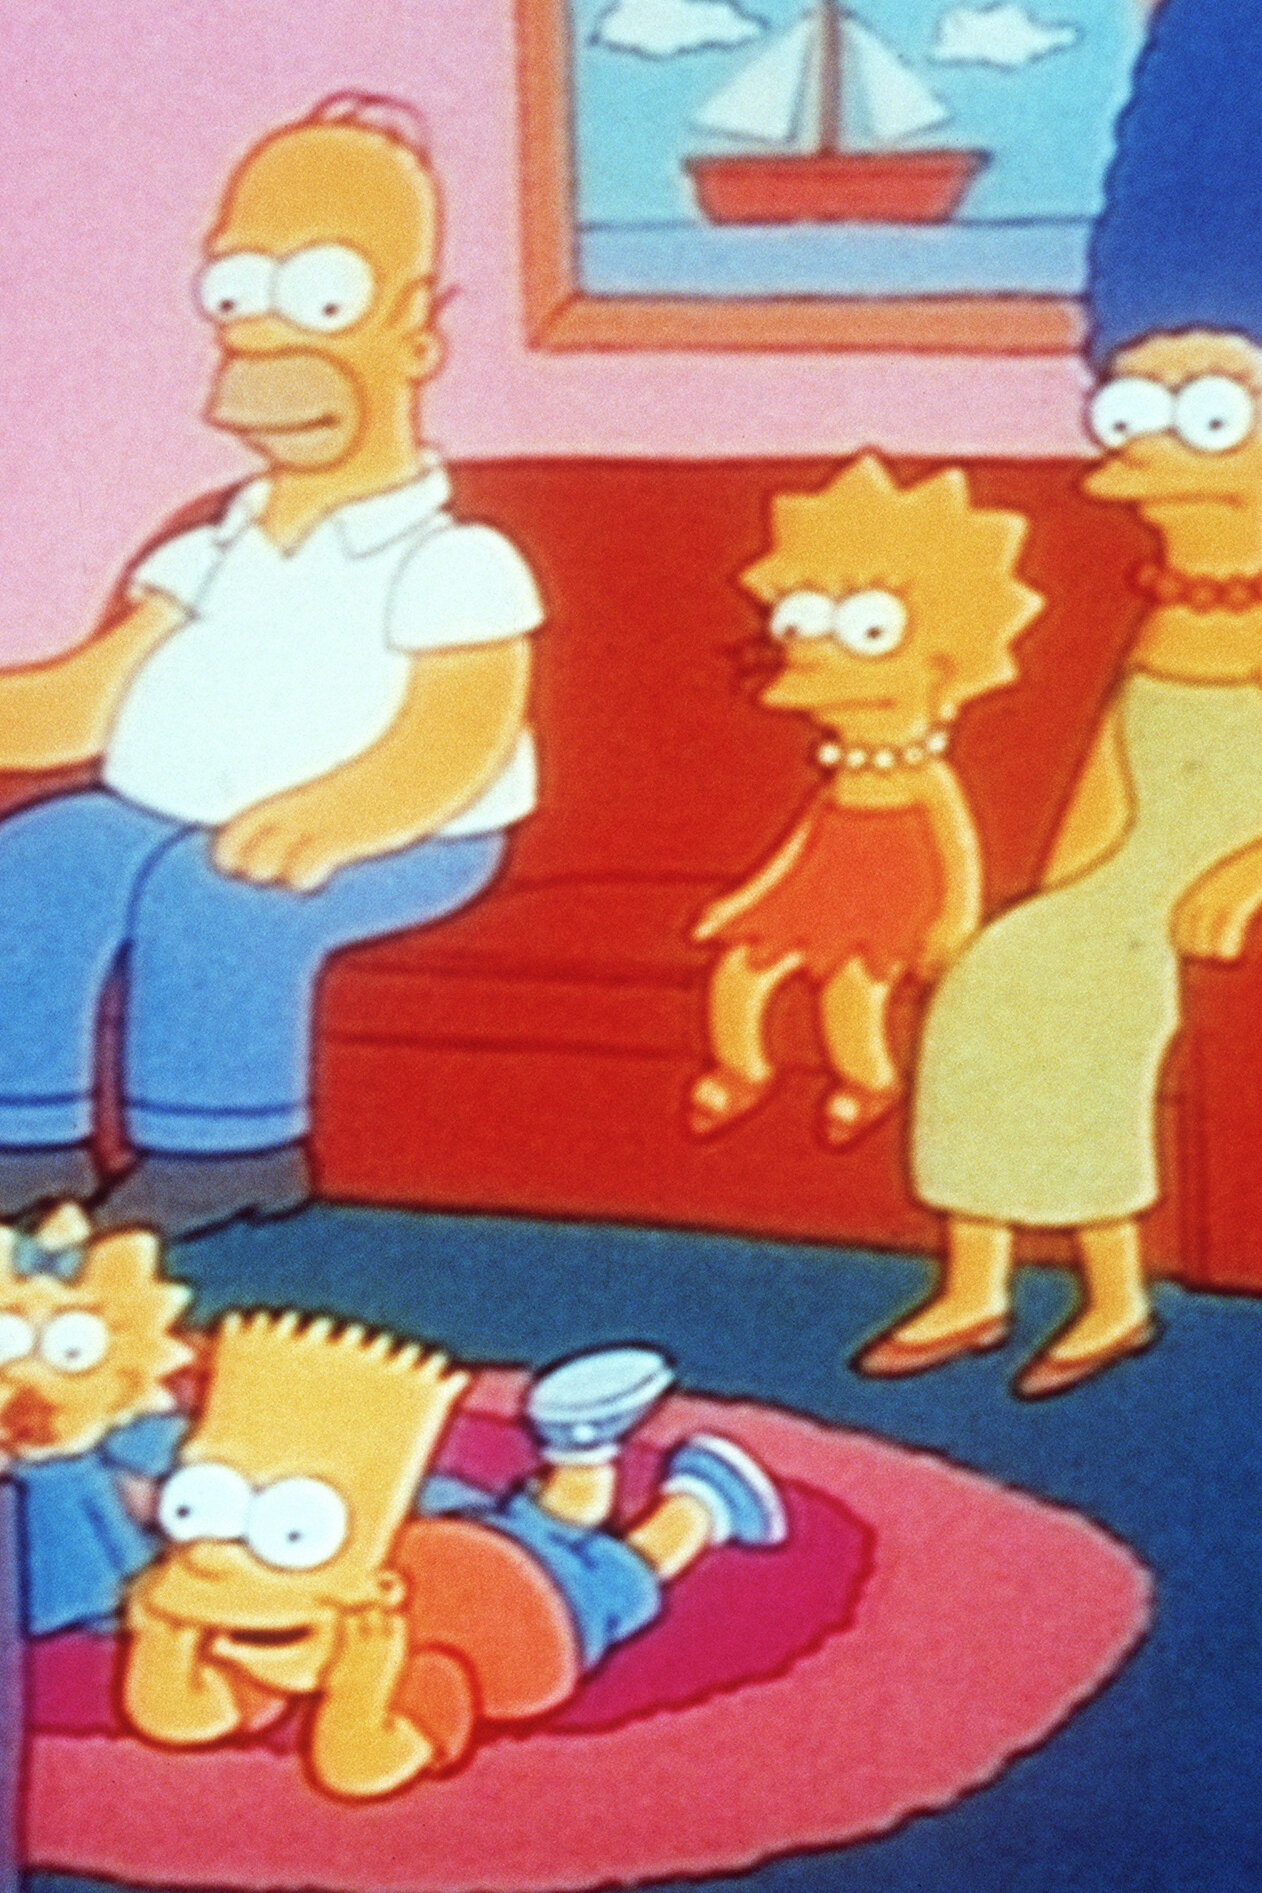 Les Simpson - Toute la vérité, rien que la vérité